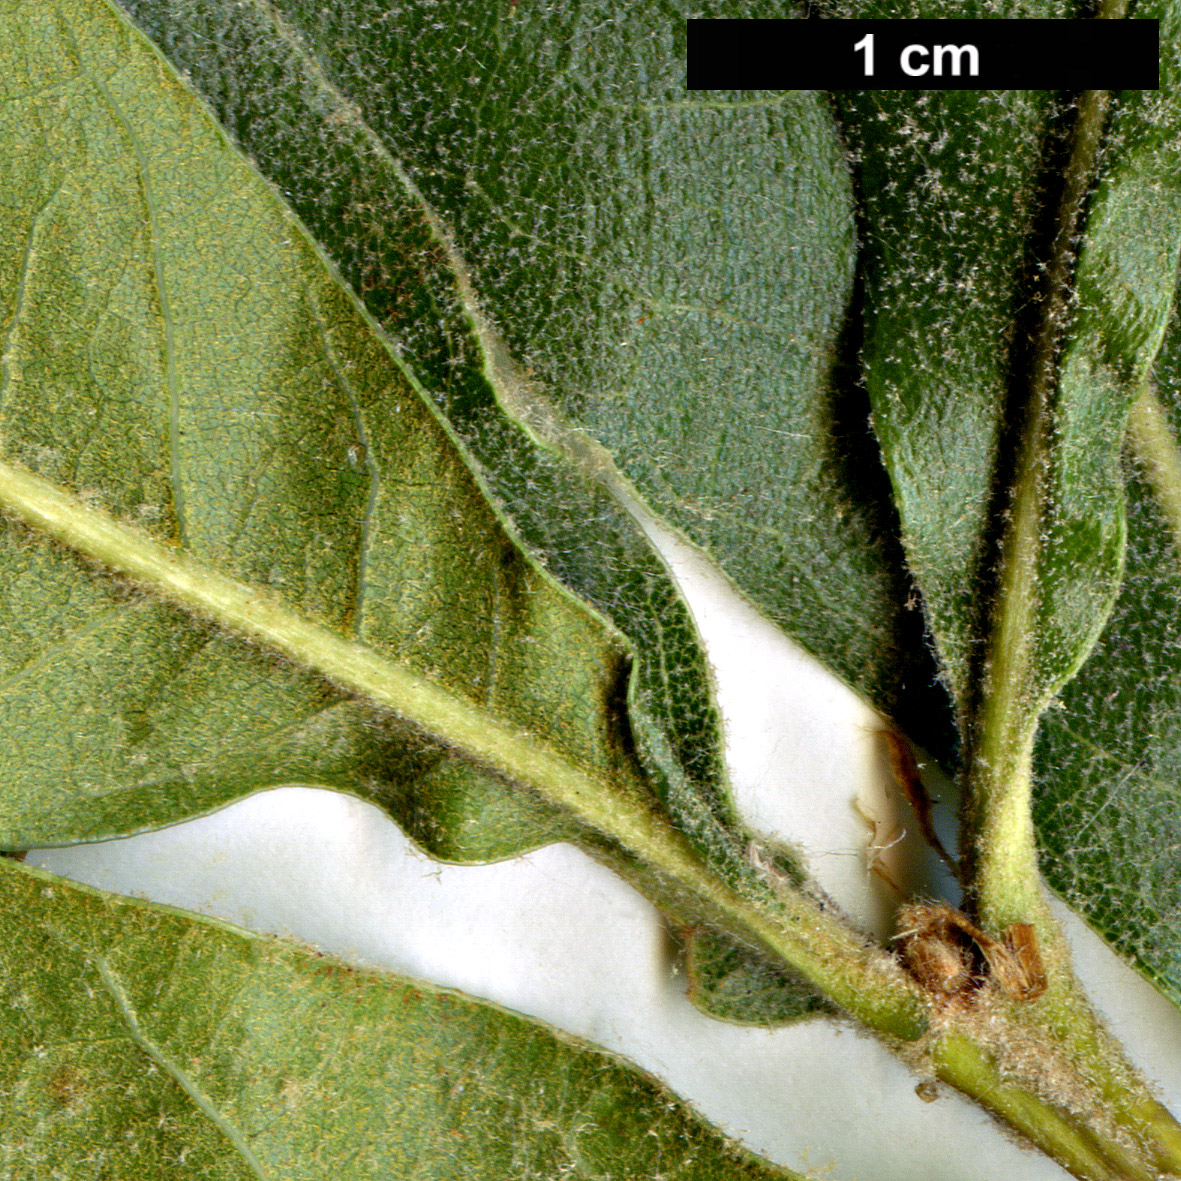 High resolution image: Family: Fagaceae - Genus: Quercus - Taxon: marilandica